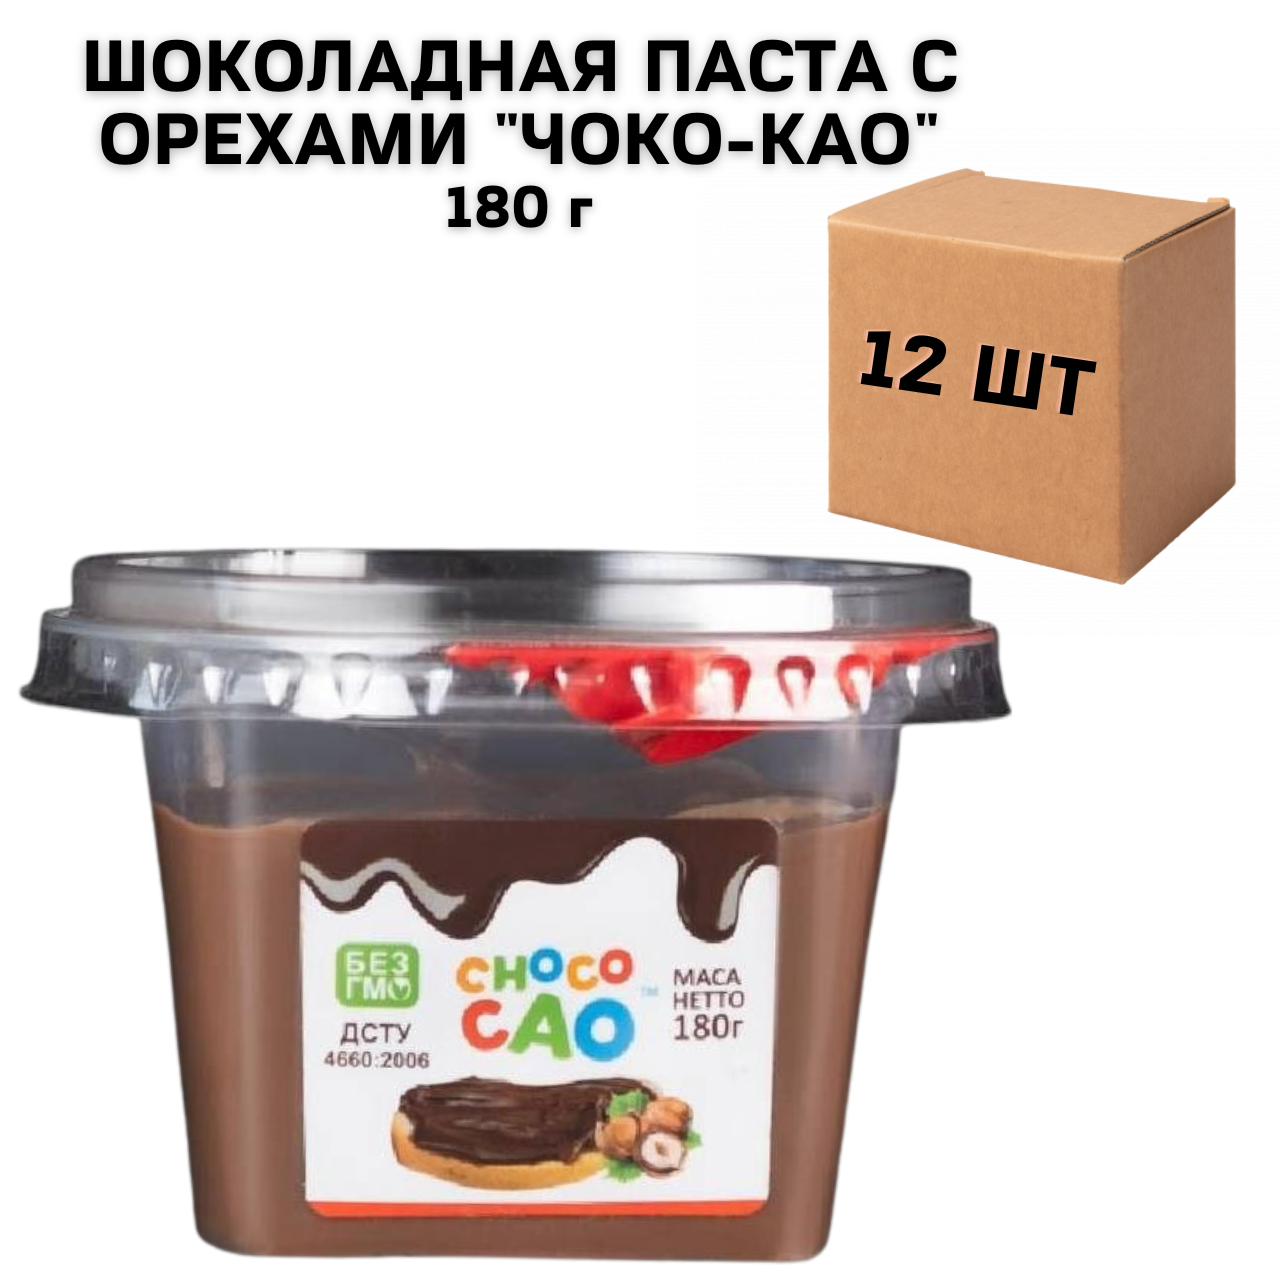 Ящик шоколадної пасти з горіхами "Чоко-као" 180 г (в ящику 12 шт)